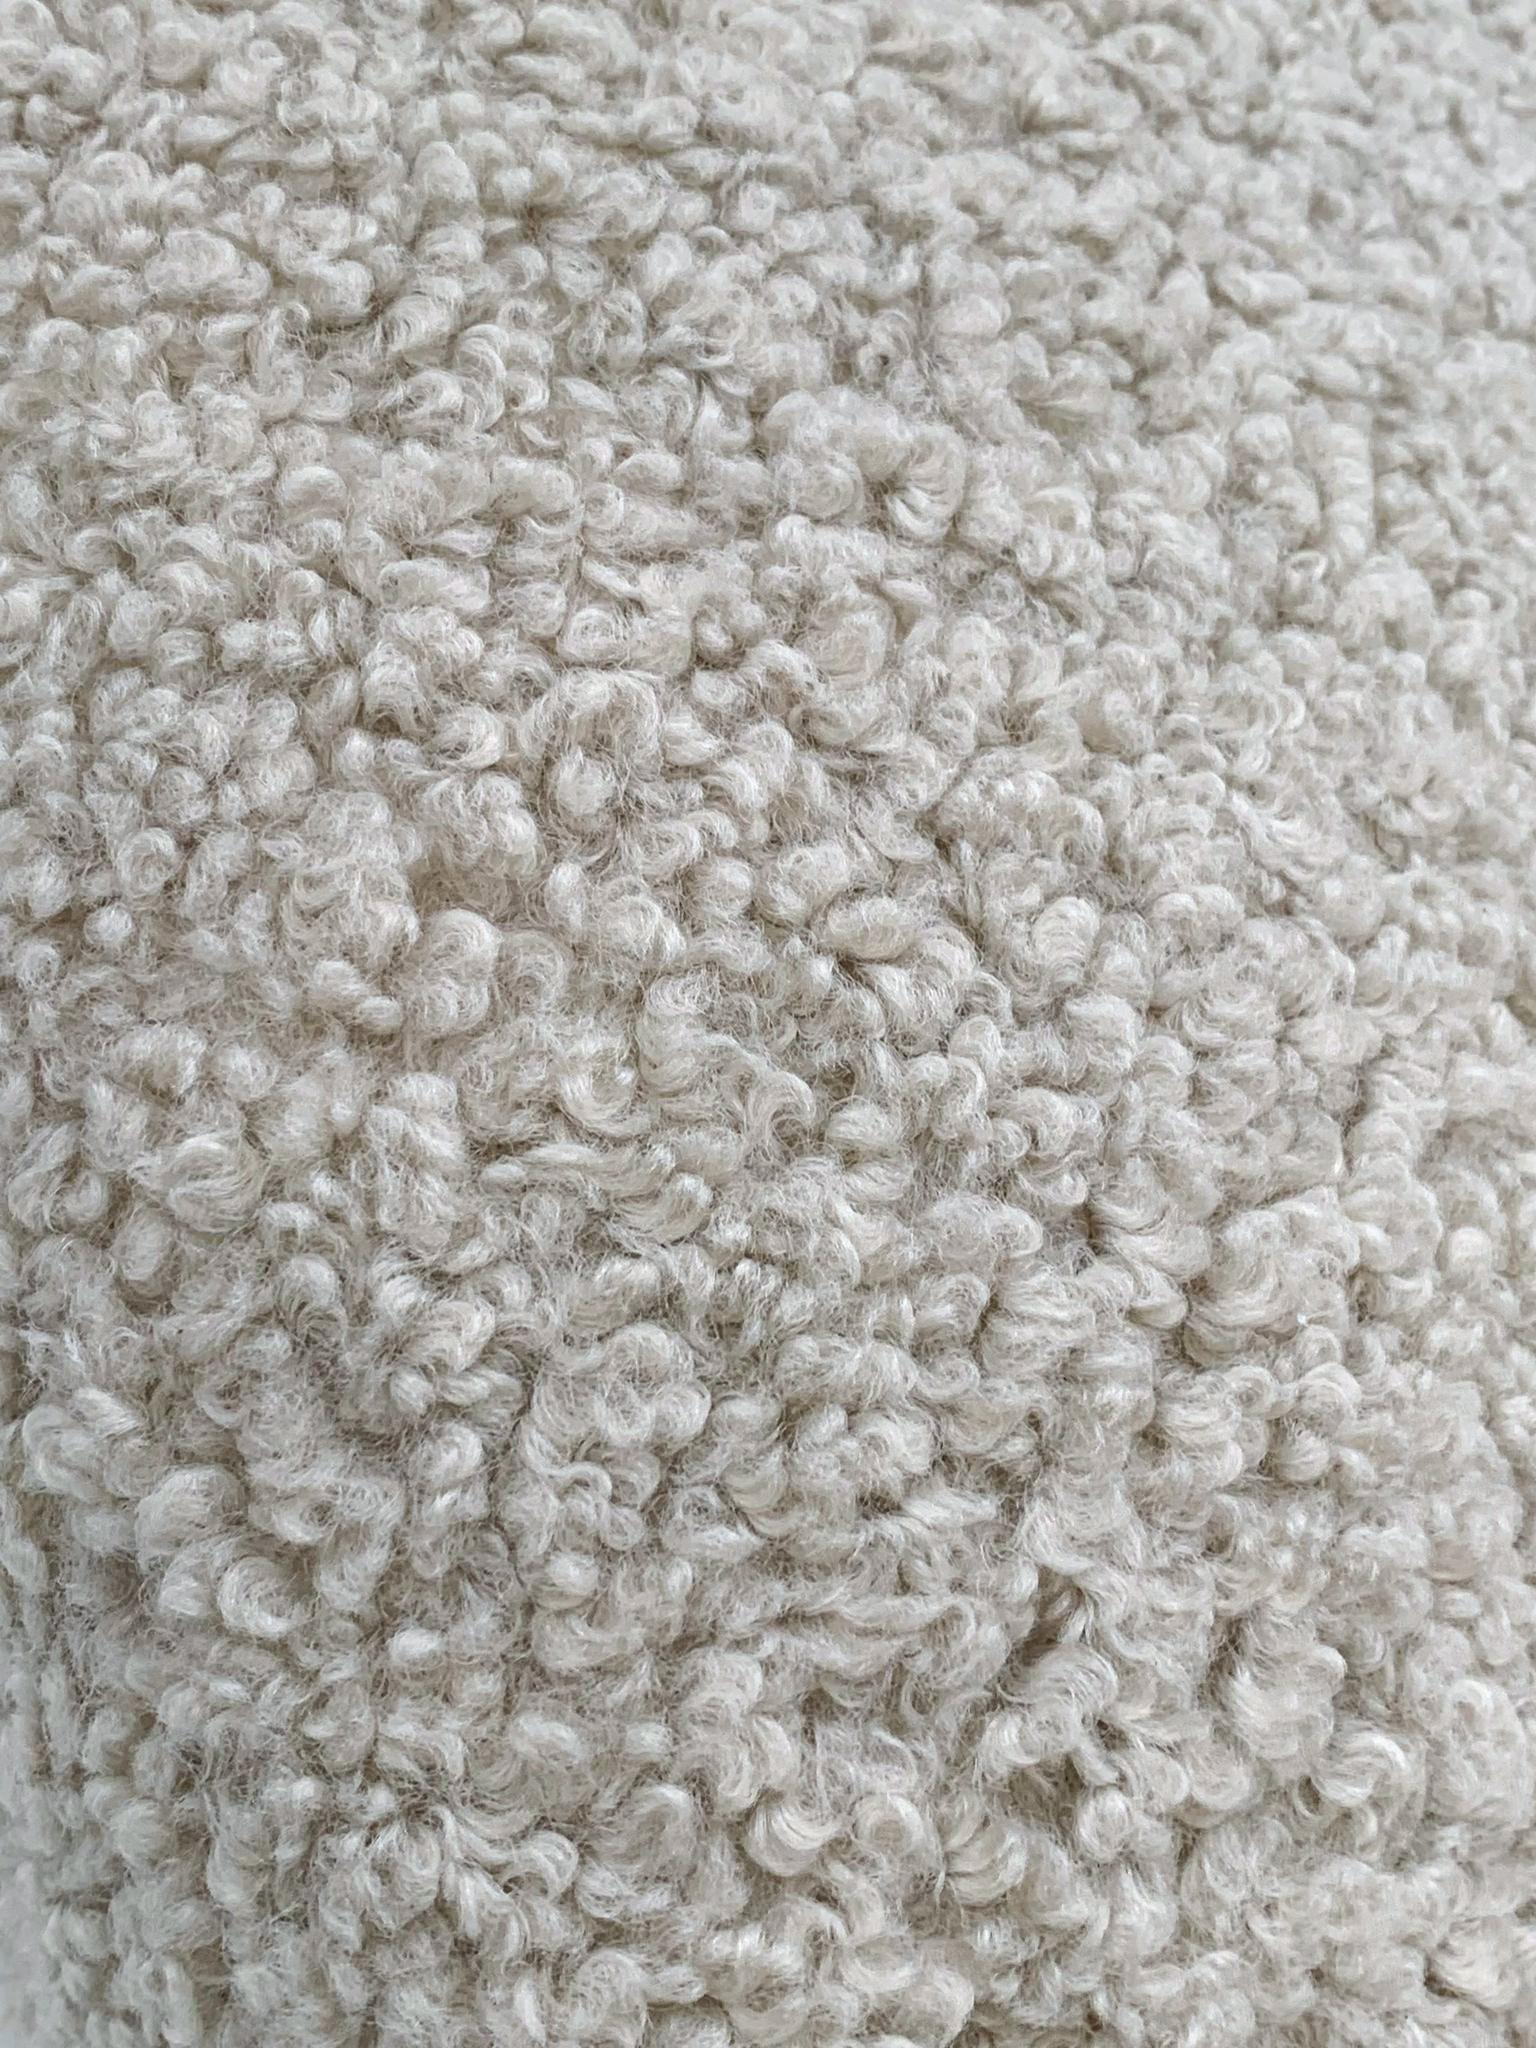 teddy bear fabric couch